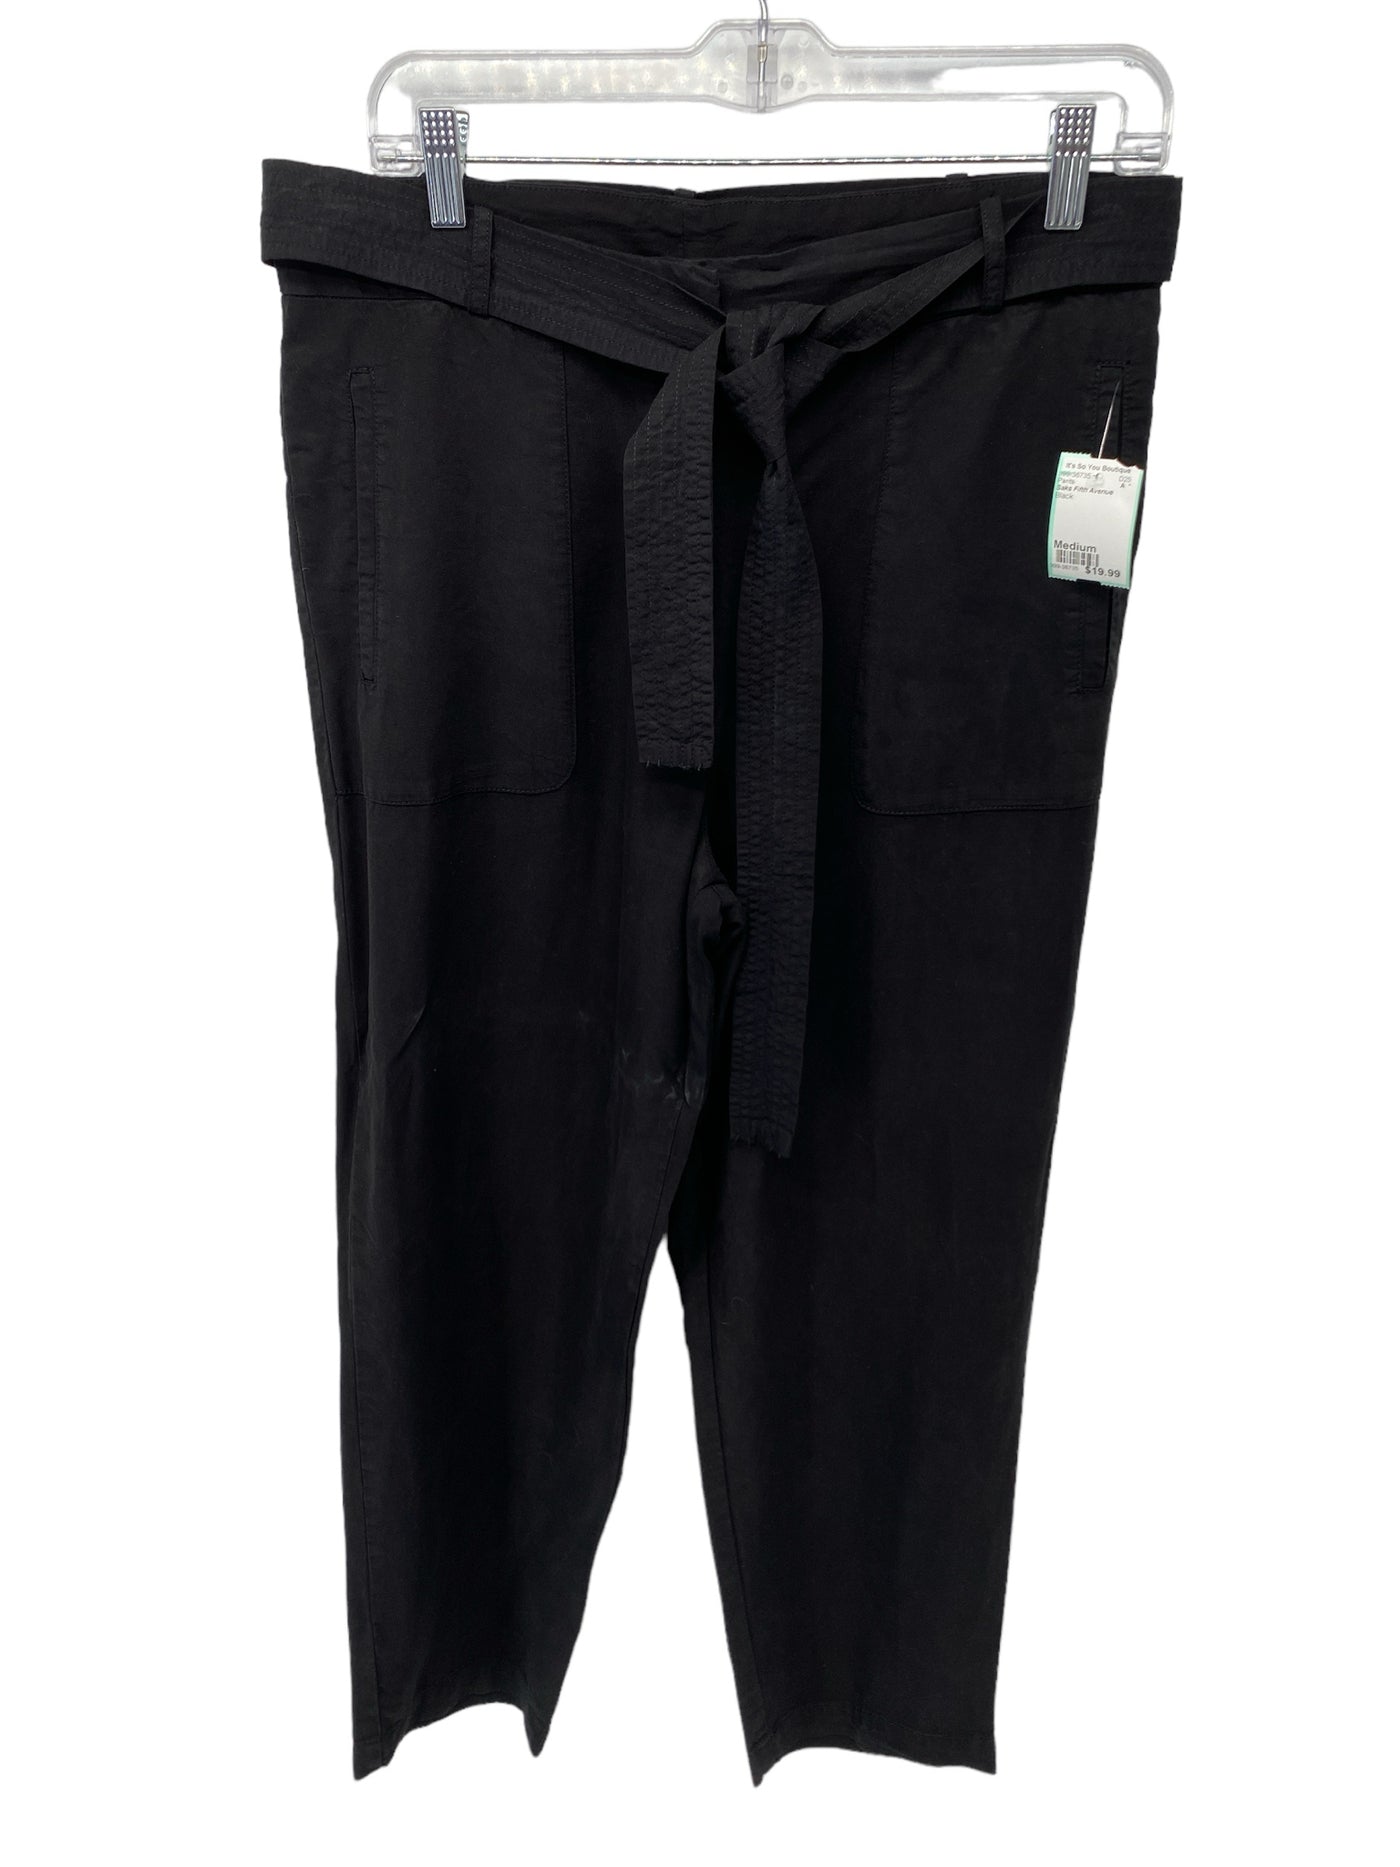 Saks Fifth Avenue Misses Size Medium Black Pants